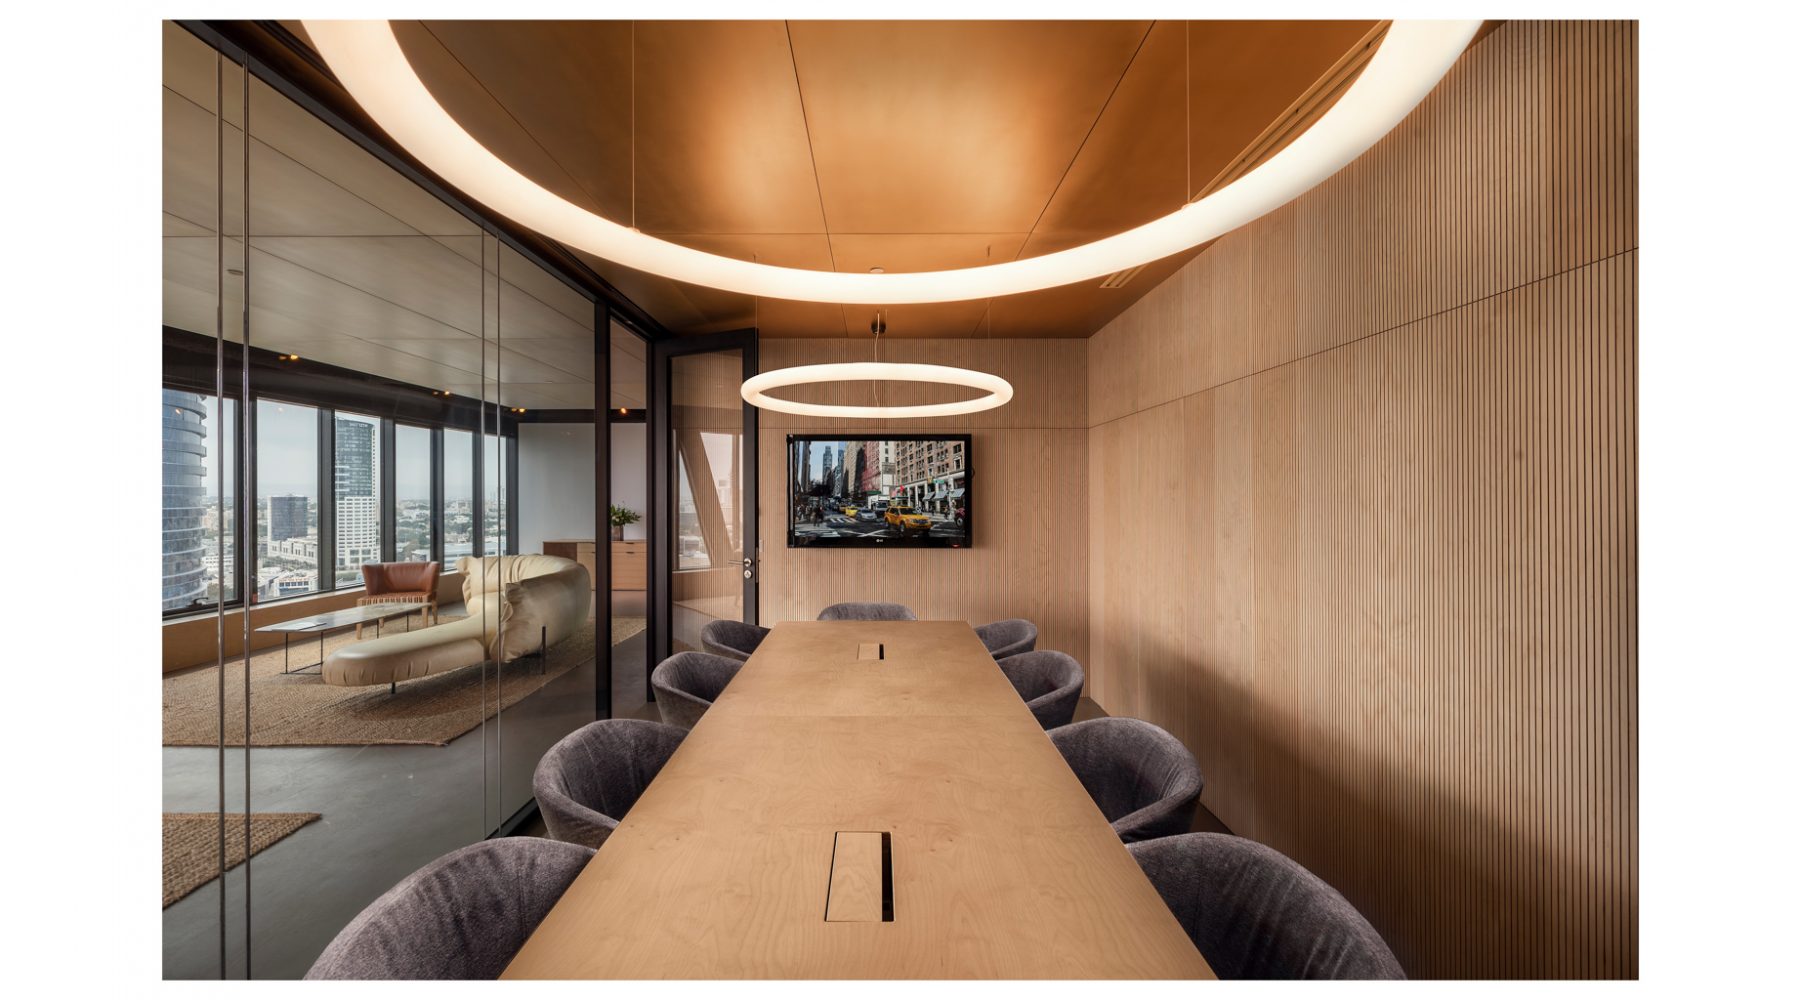 משרדי YBOX בעיצוב אדריכלי וחיפוי עץ עם נוף